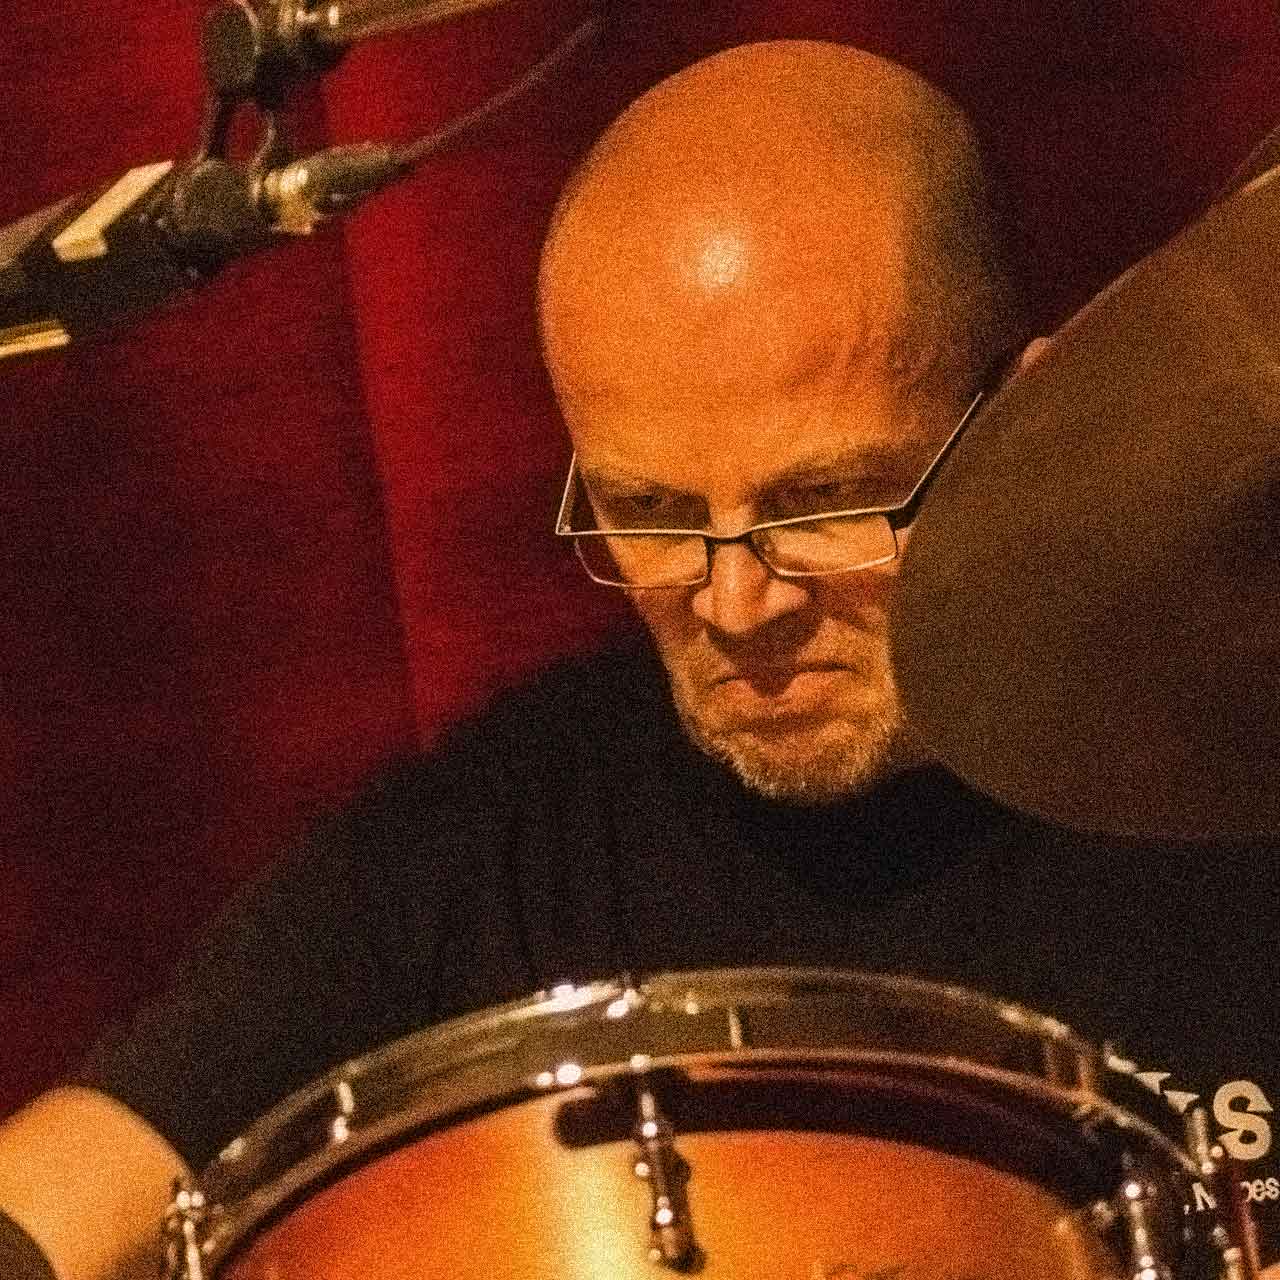 Michael Pape plays drums